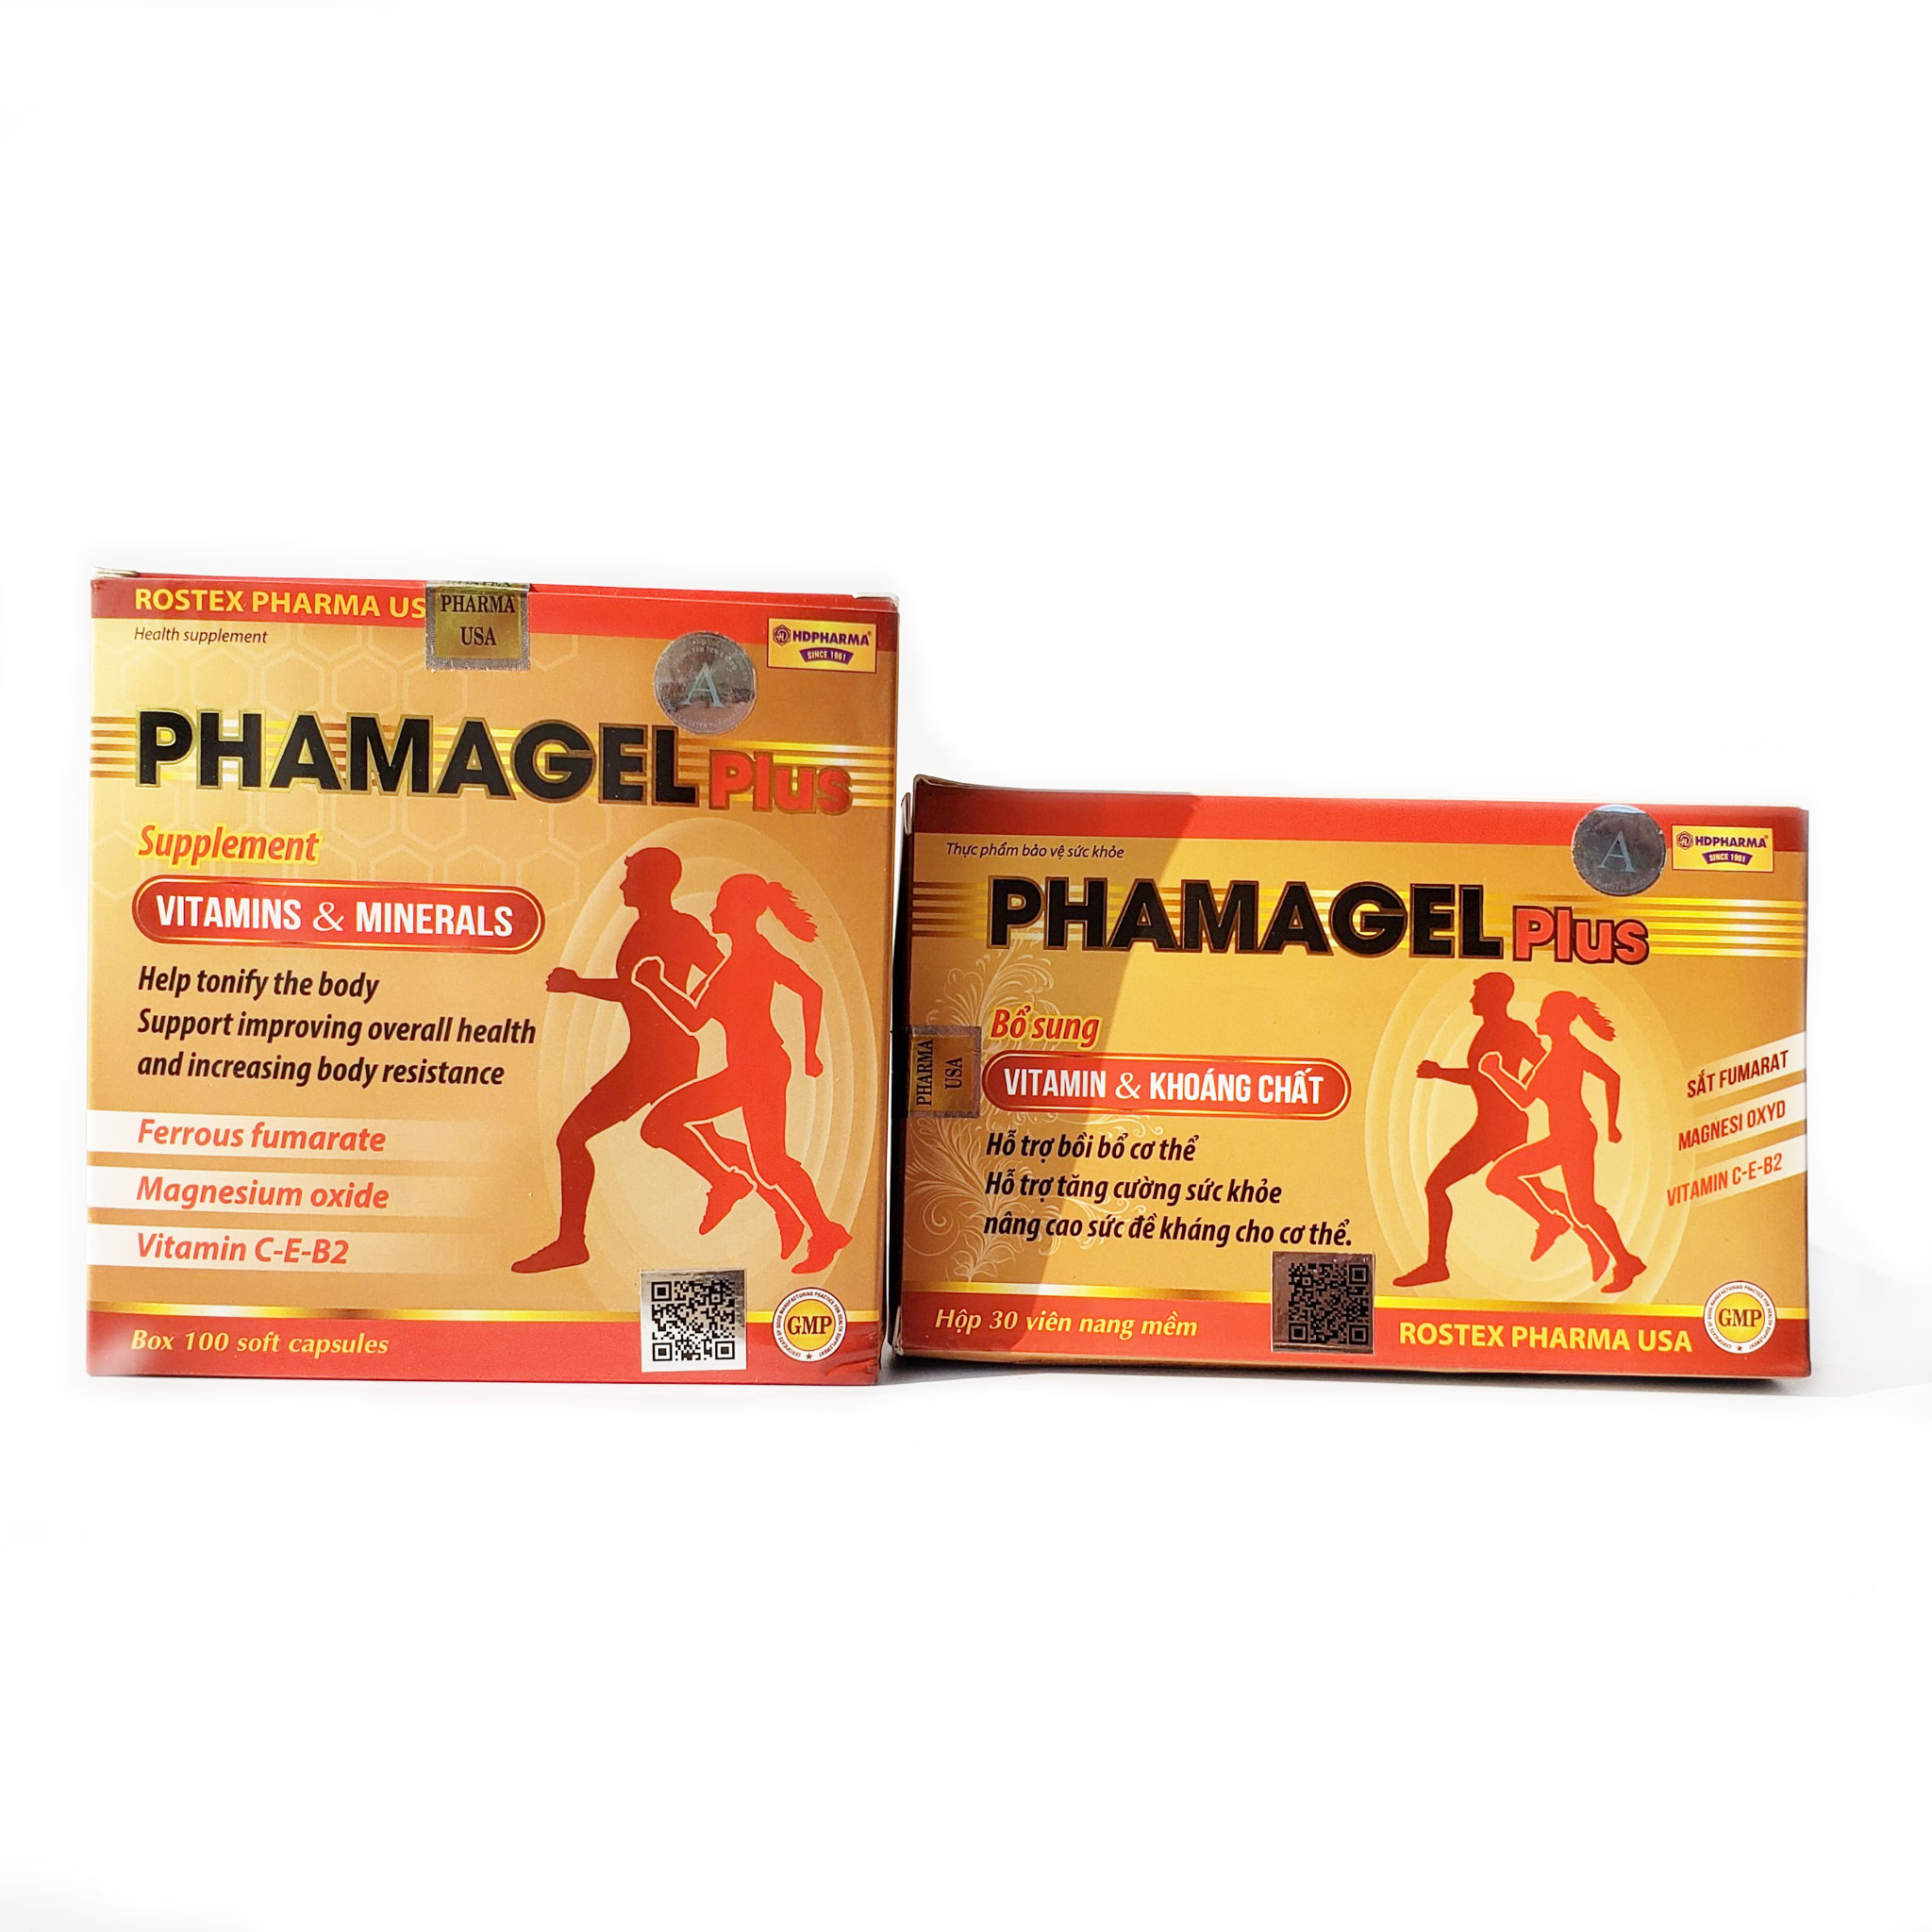 PHAMAGEL Plus Bổ sung Vitamin & Khoáng chất giúp bồi bổ cơ thể nâng cao sức đề kháng Hộp 100 viên